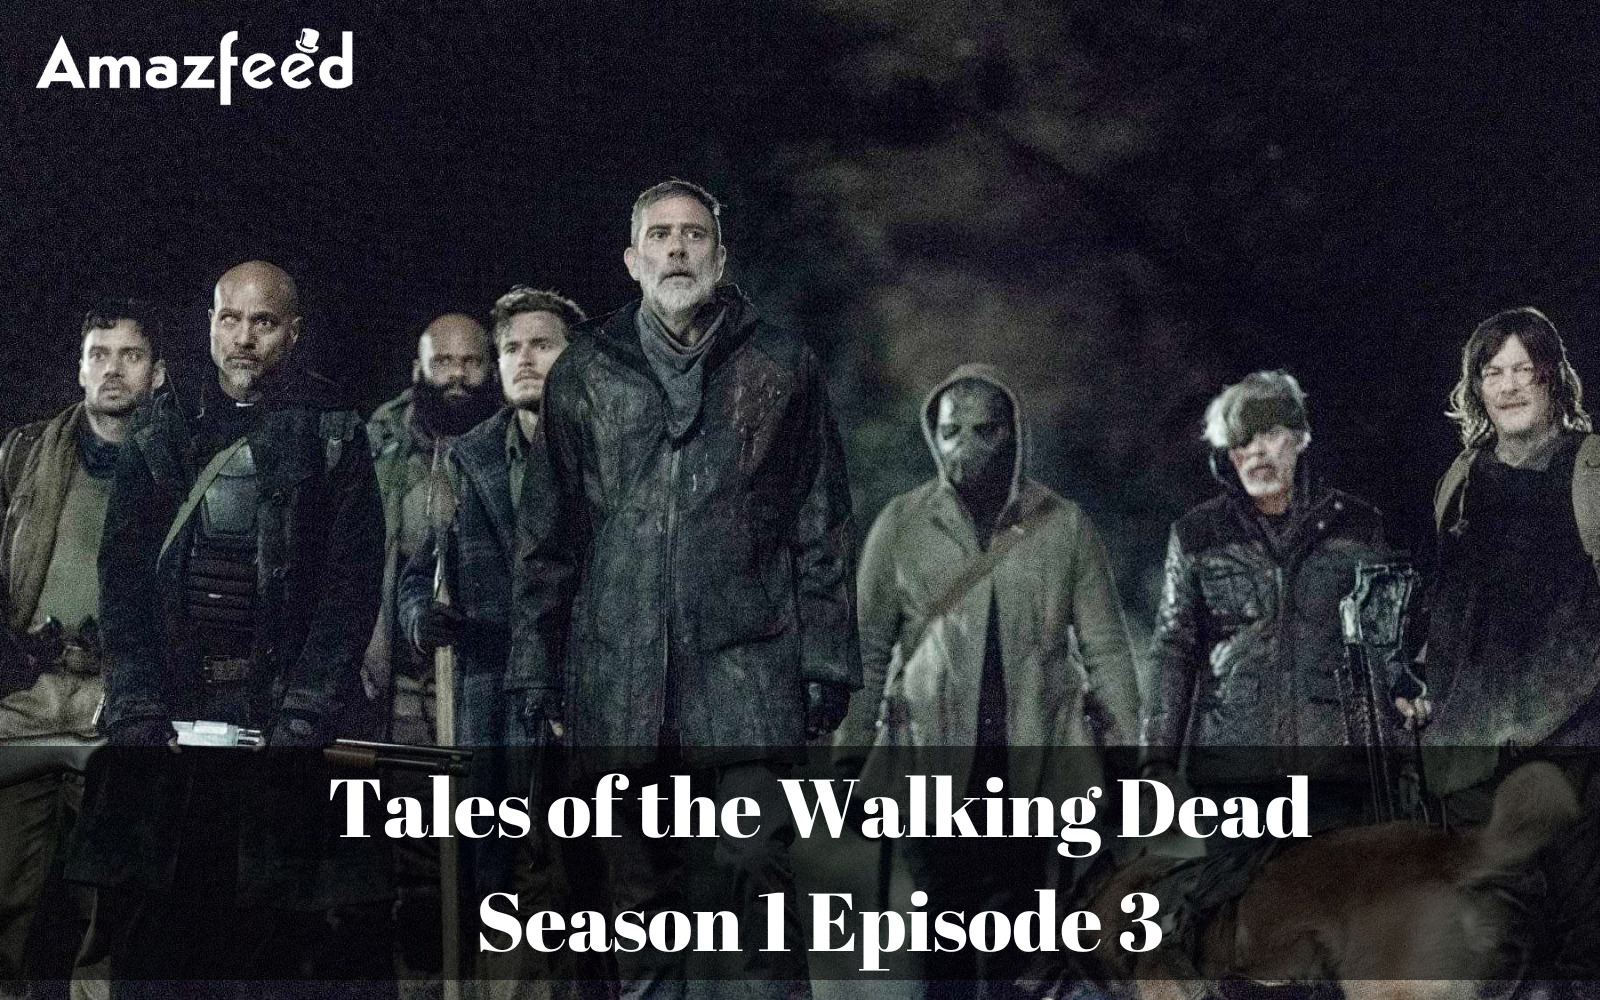 Tales of the Walking Dead Season 1 Episode 3 Countdown